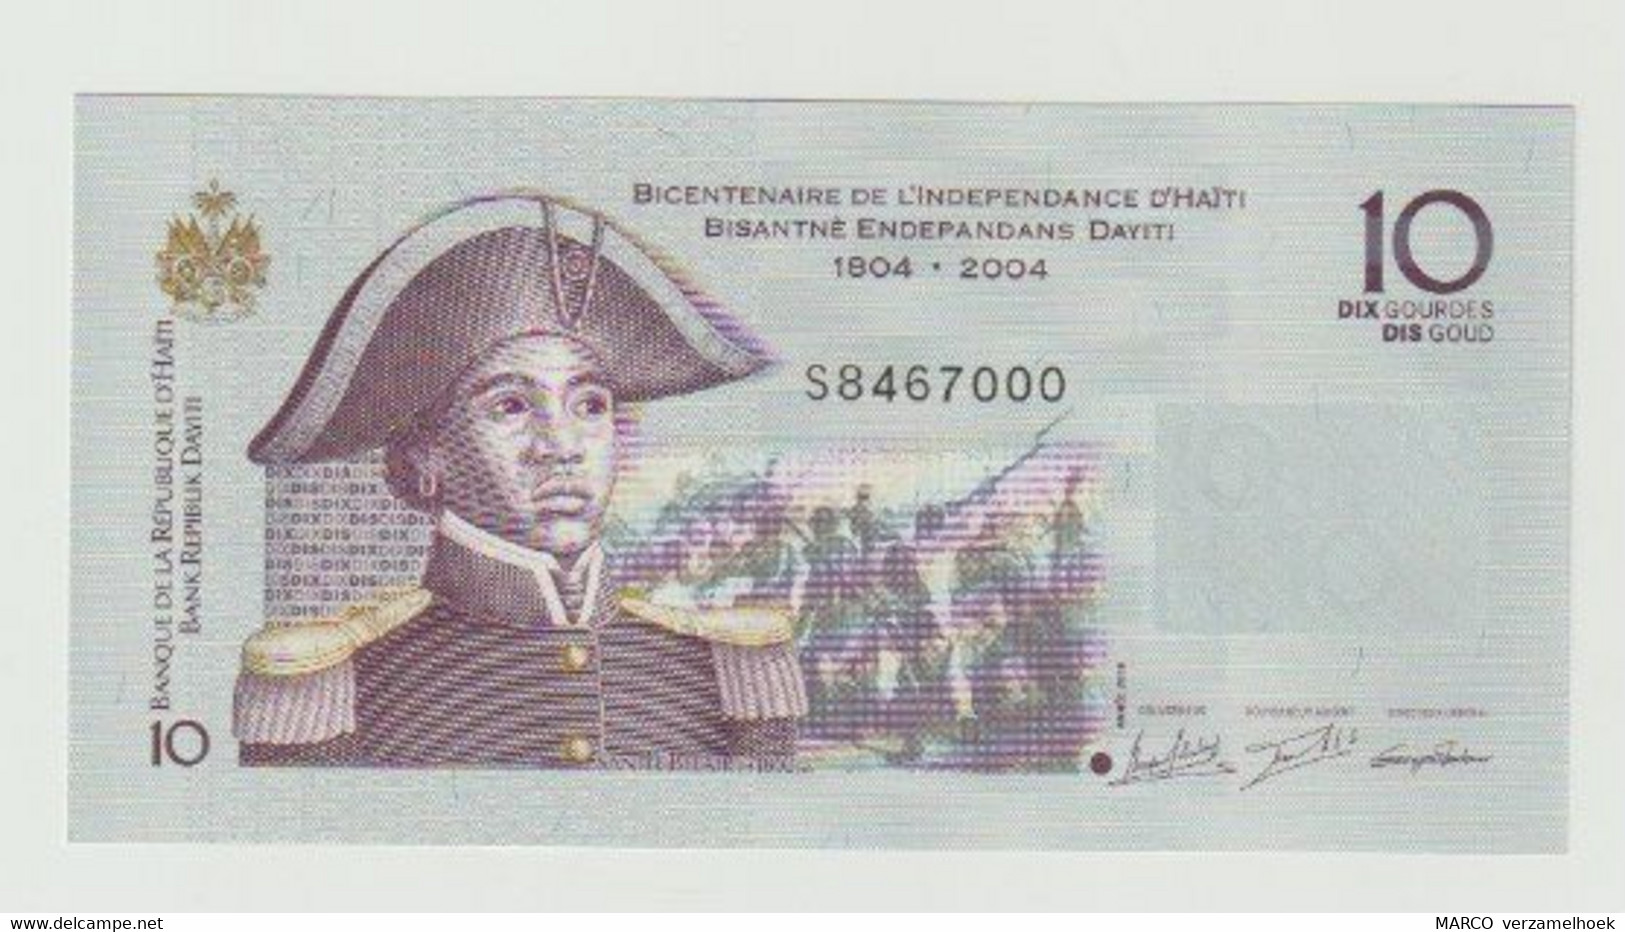 Banknote Bicentenaire De L'independance D'Haïti 10 Gourdes-goud 2016 UNC - Haïti